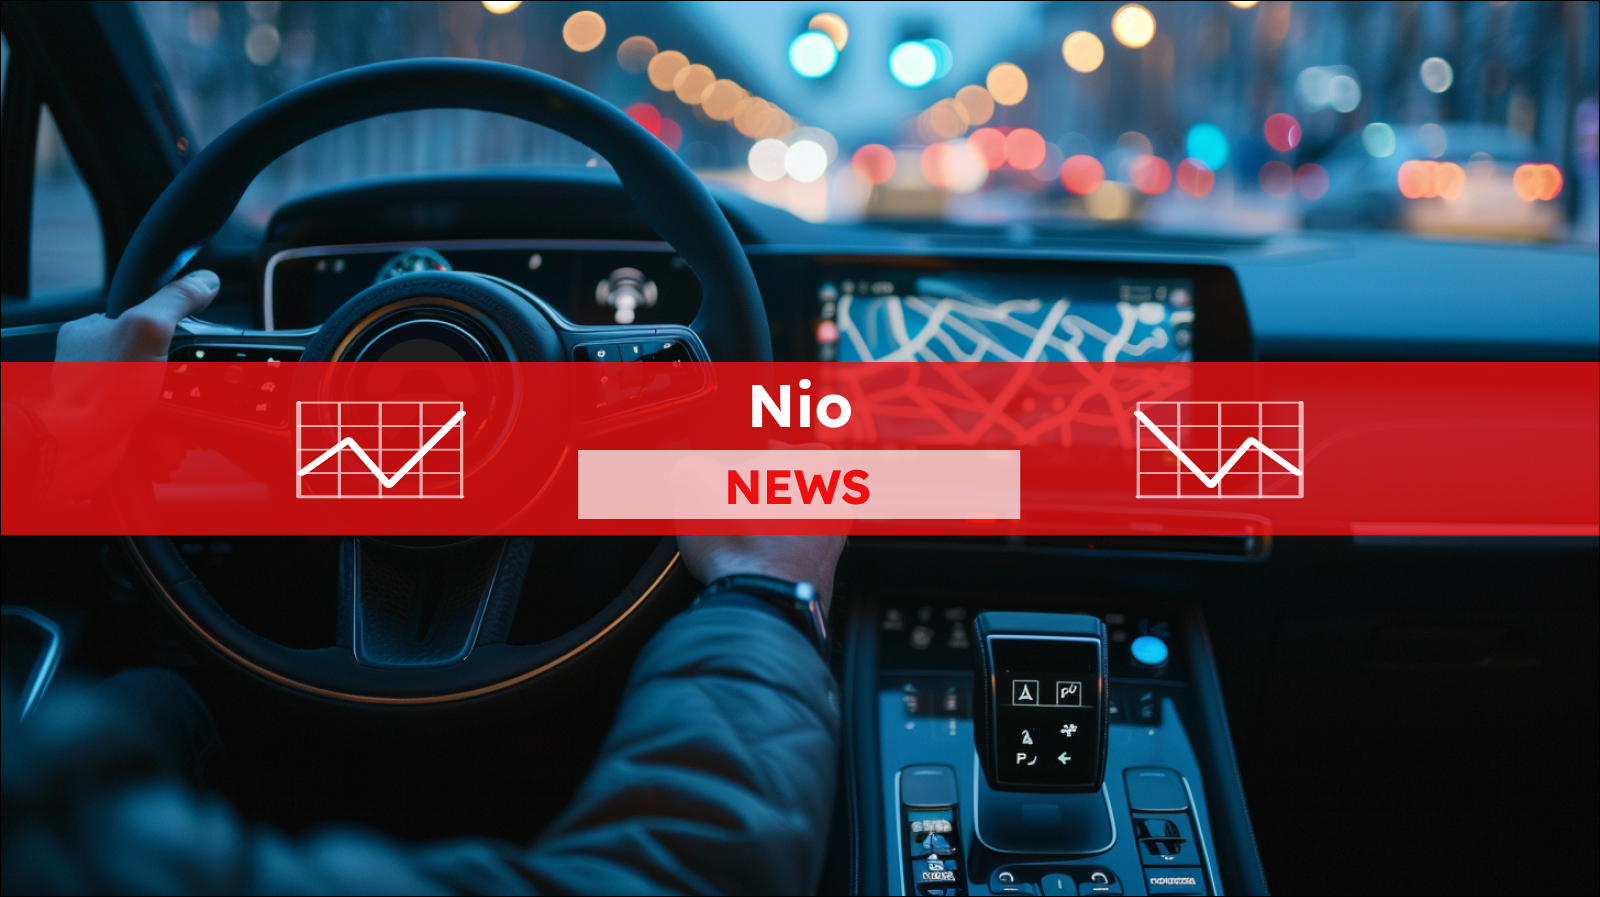 Eine Person in einem Auto interagiert mit dem Touchscreen des Navigationssystems, mit einem roten NIO NEWS Banner